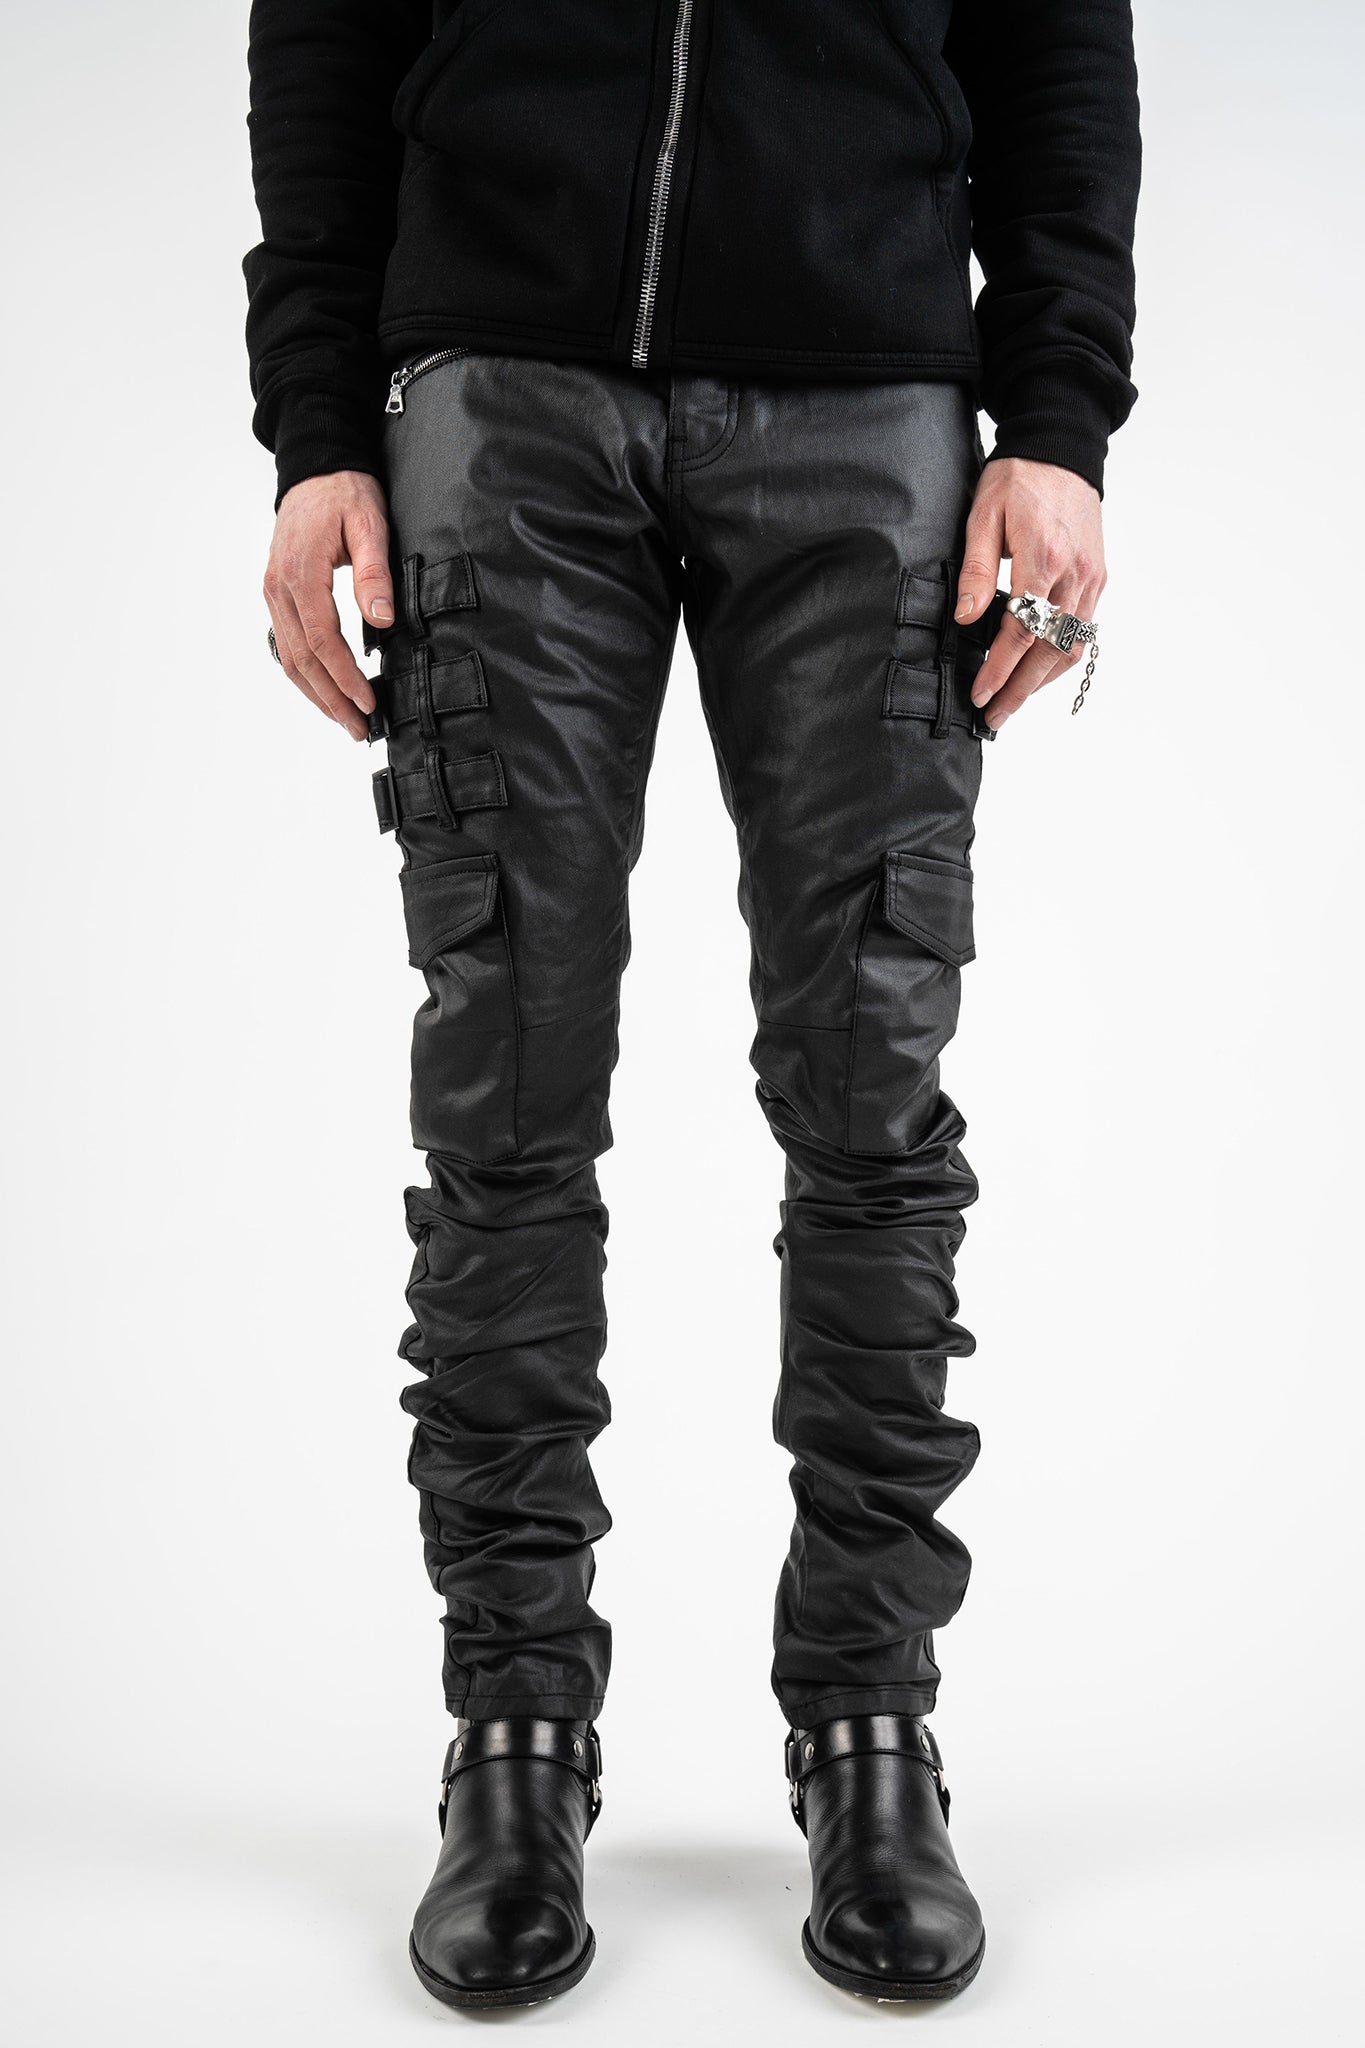 爆買い人気SALE DRKSHDW - AKINGS / Black Coated Pantsの通販 by ...